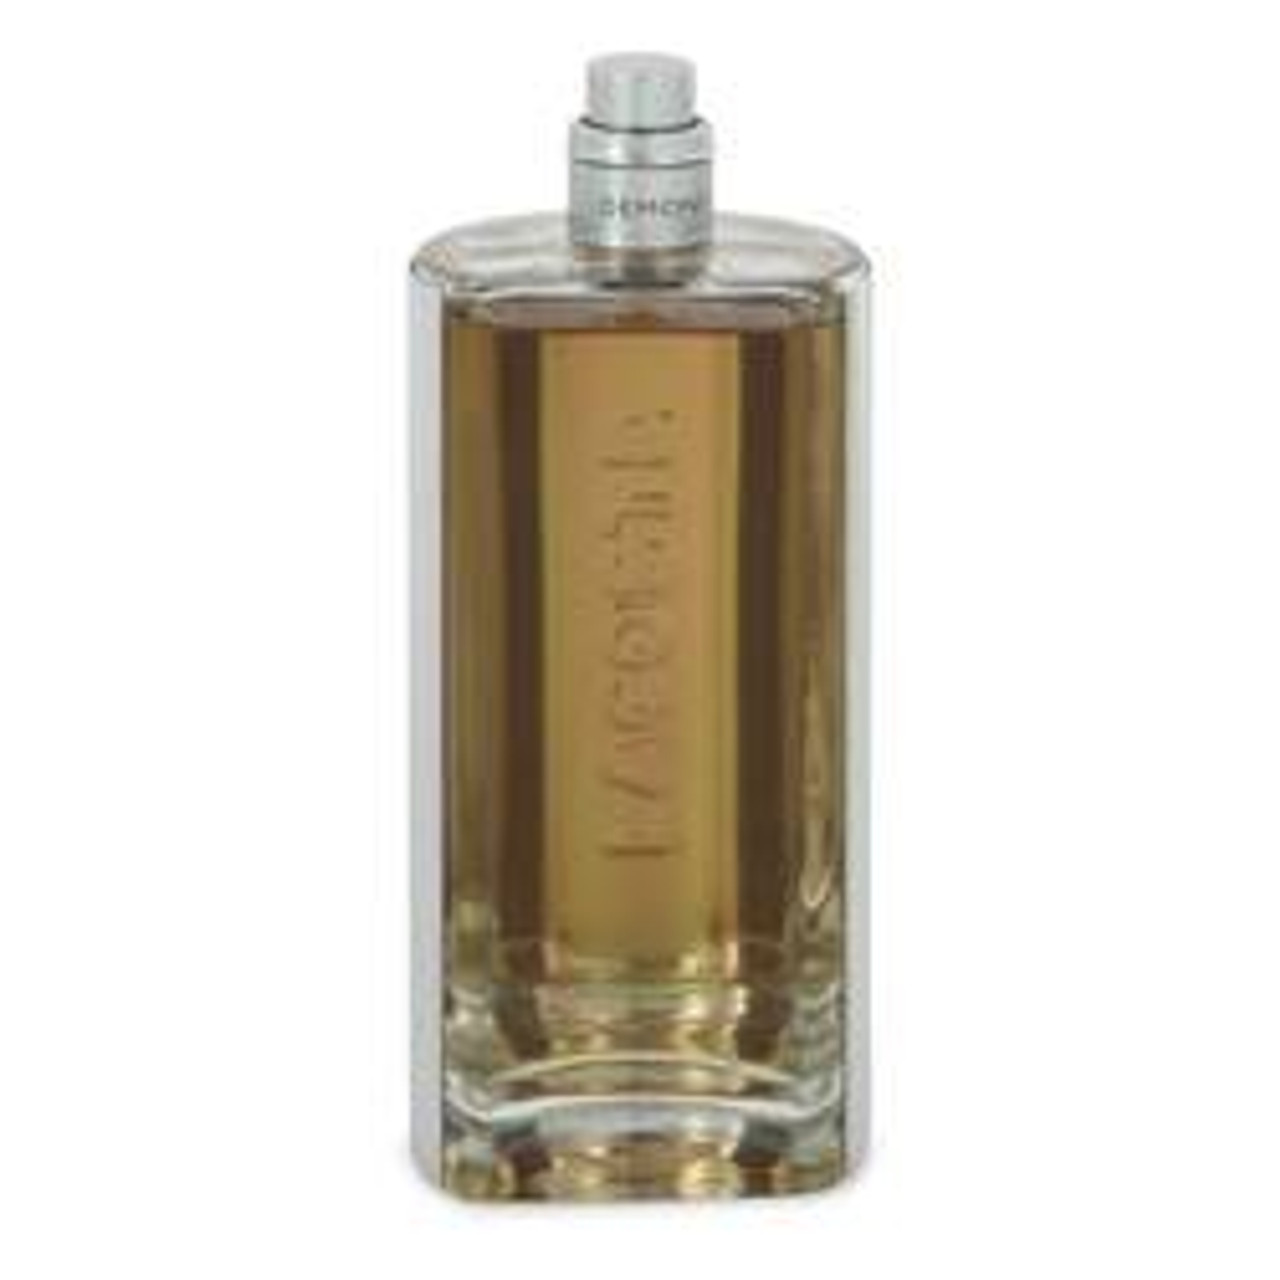 Lacoste Elegance Cologne By Lacoste Eau De Toilette Spray (Tester) 3 oz for Men - *Pre-Order